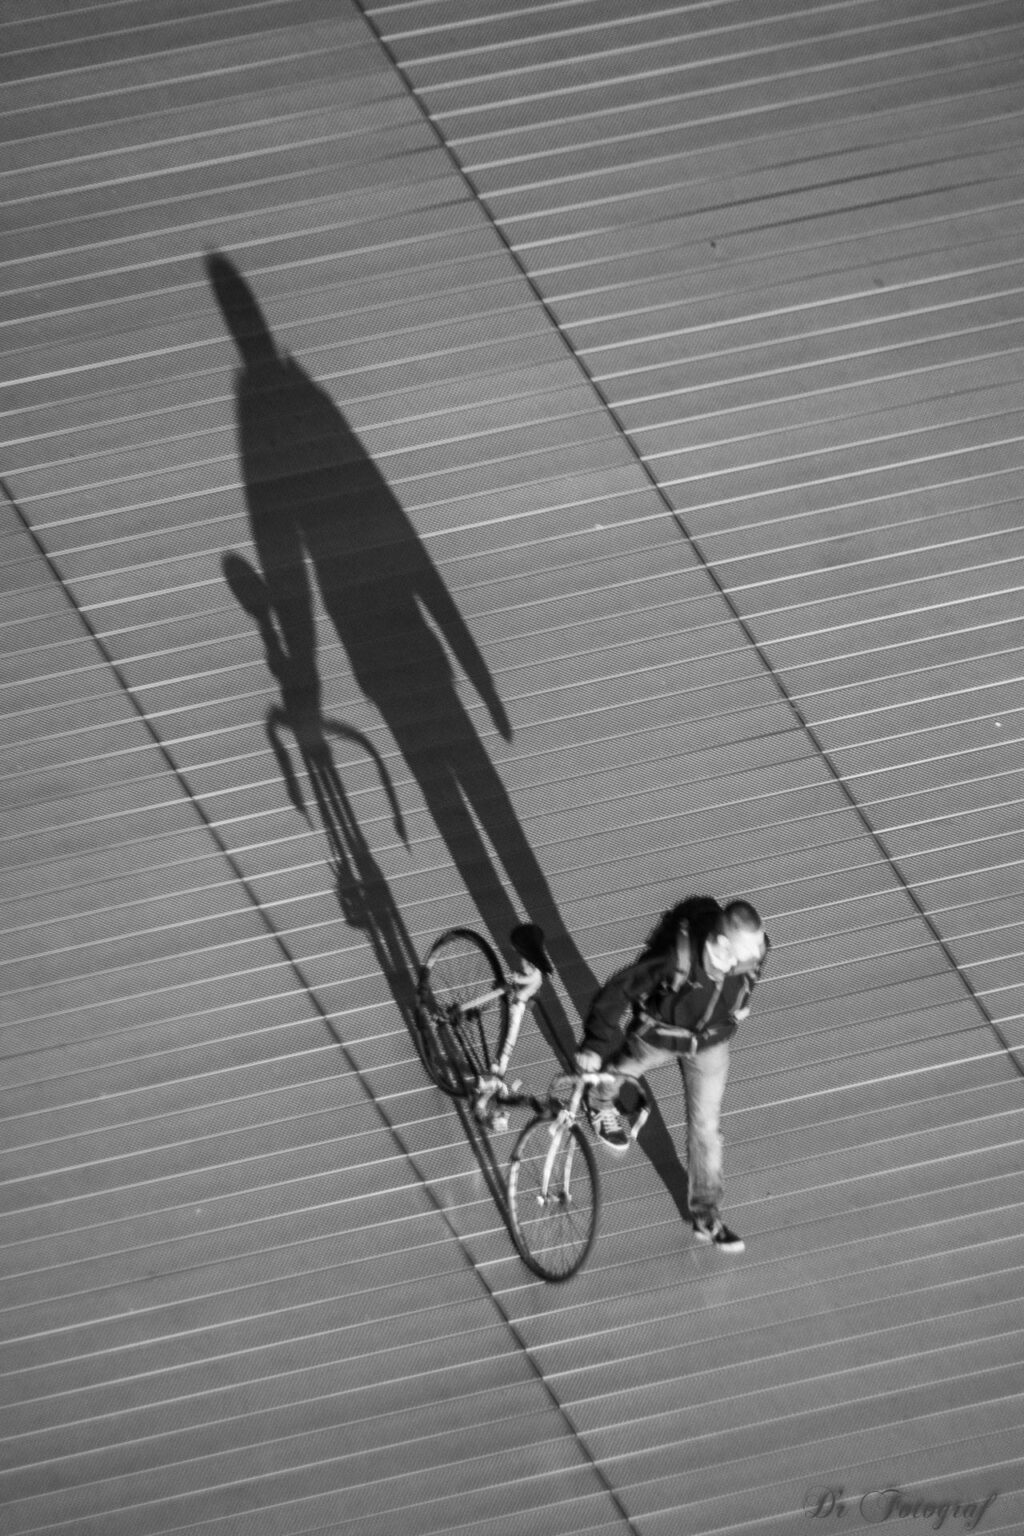 Der Schatten des Radfahrers